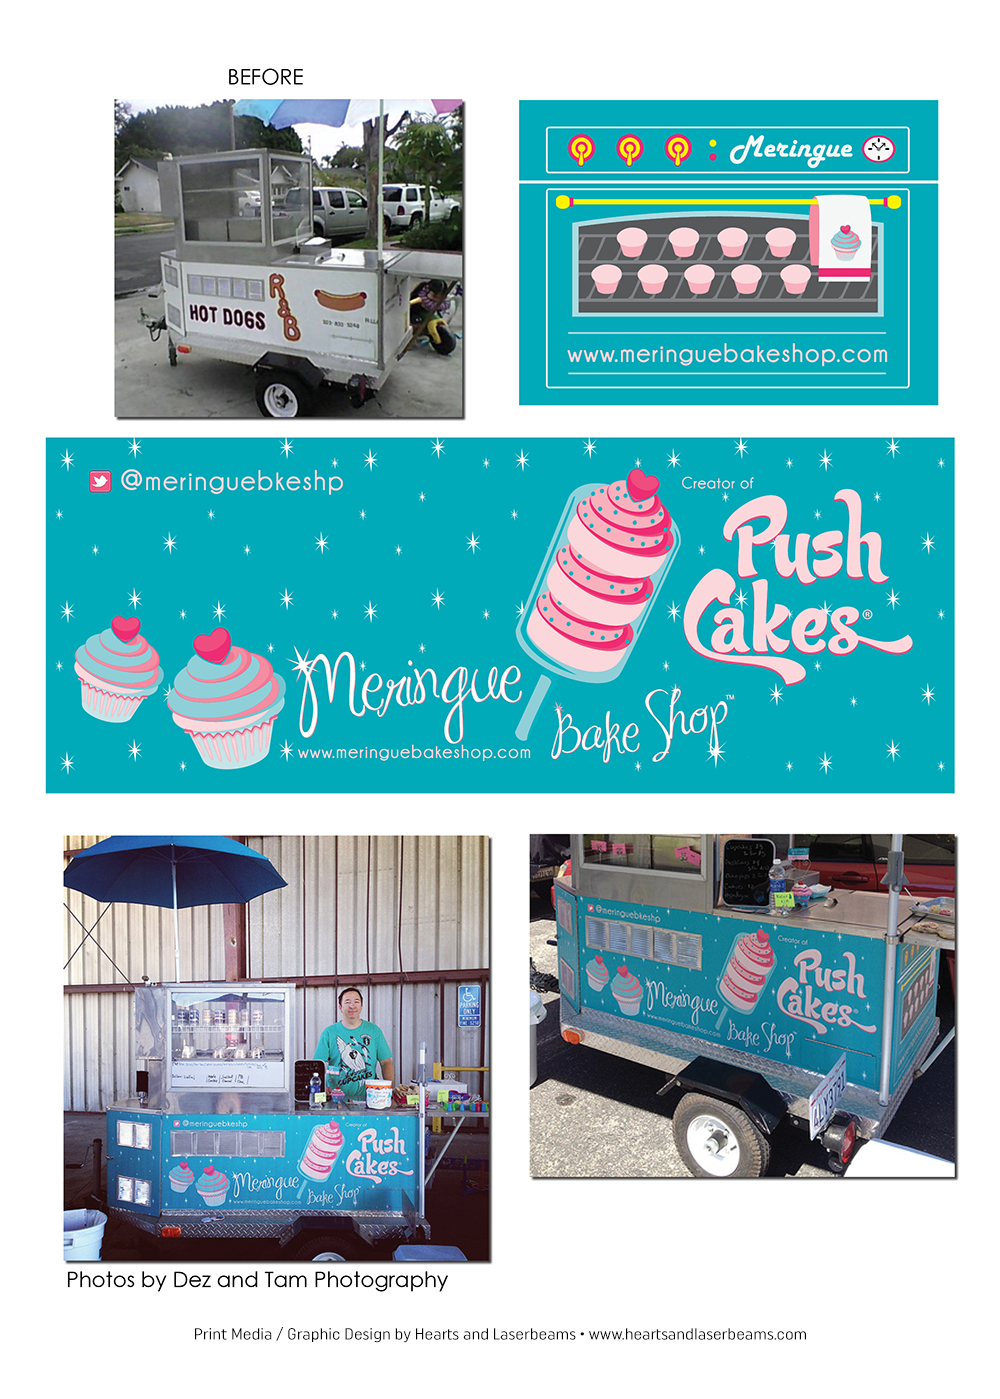 Print Media - Graphic Design Portfolio - Vehicle Wrap - Meringue Bake Shop by Hearts and Laserbeams